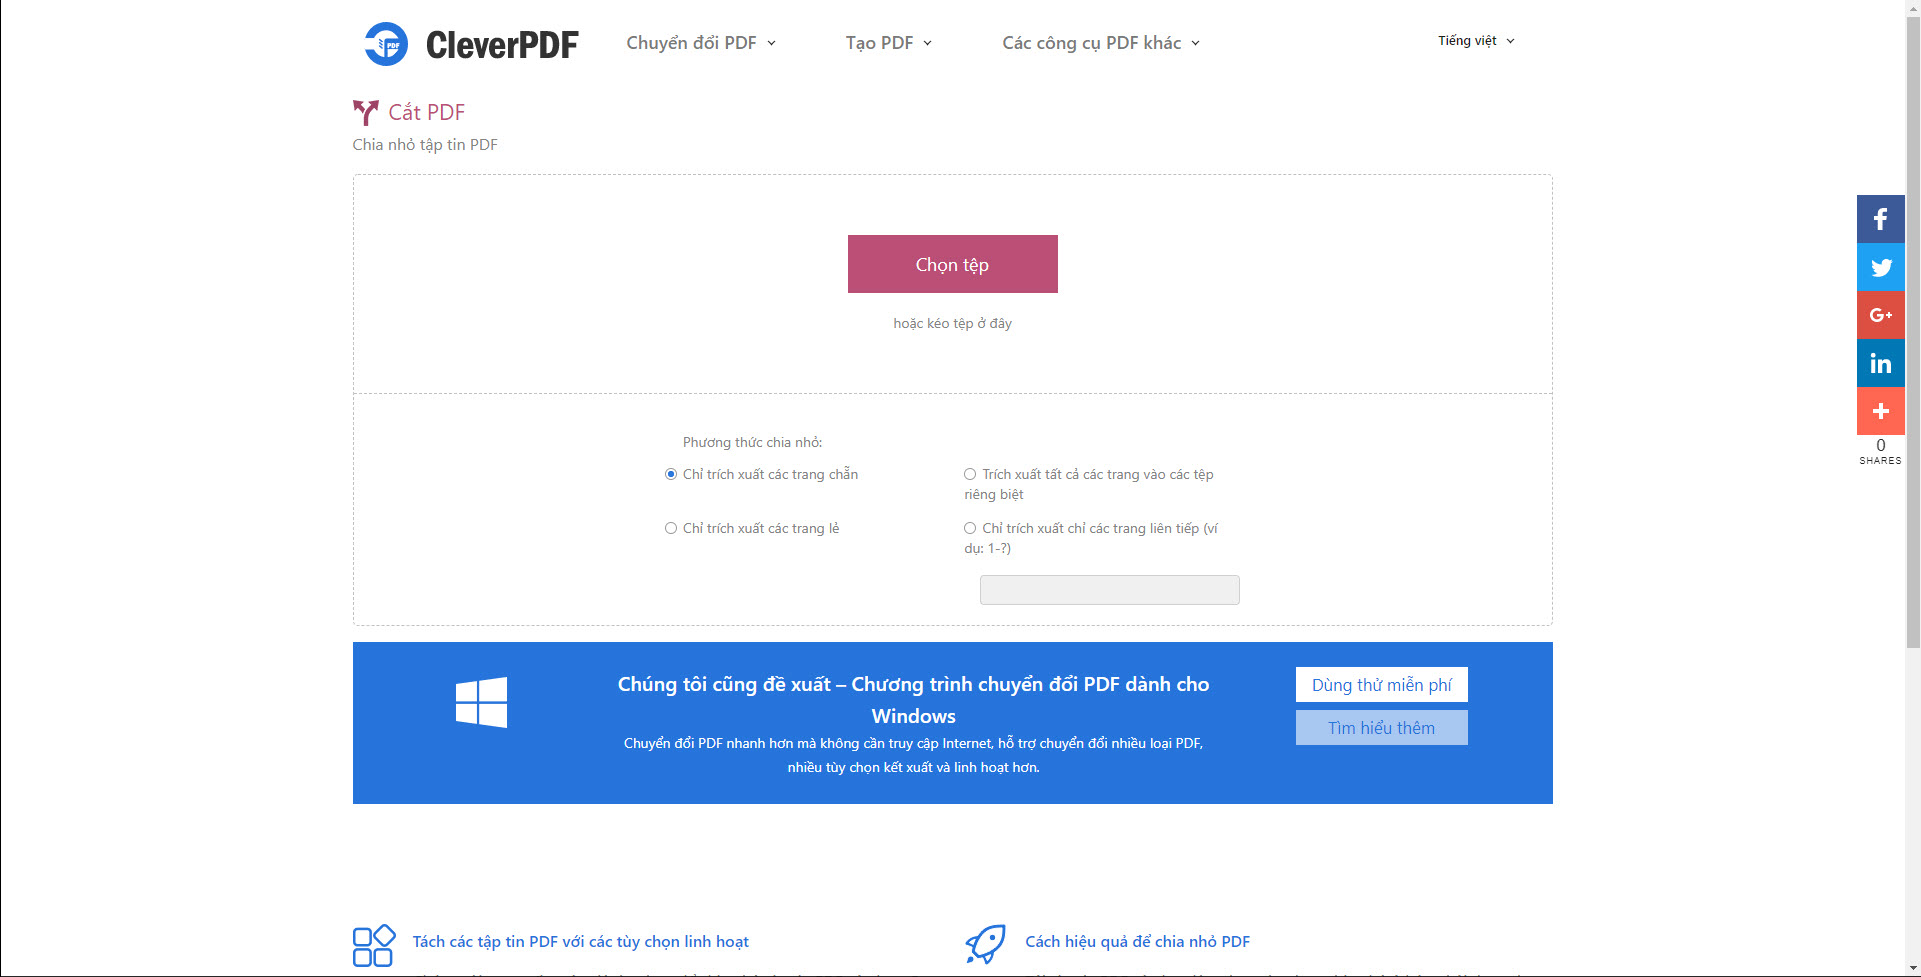 Cắt PDF - Chia nhỏ tập tin PDF Miễn phí - CleverPDF.com